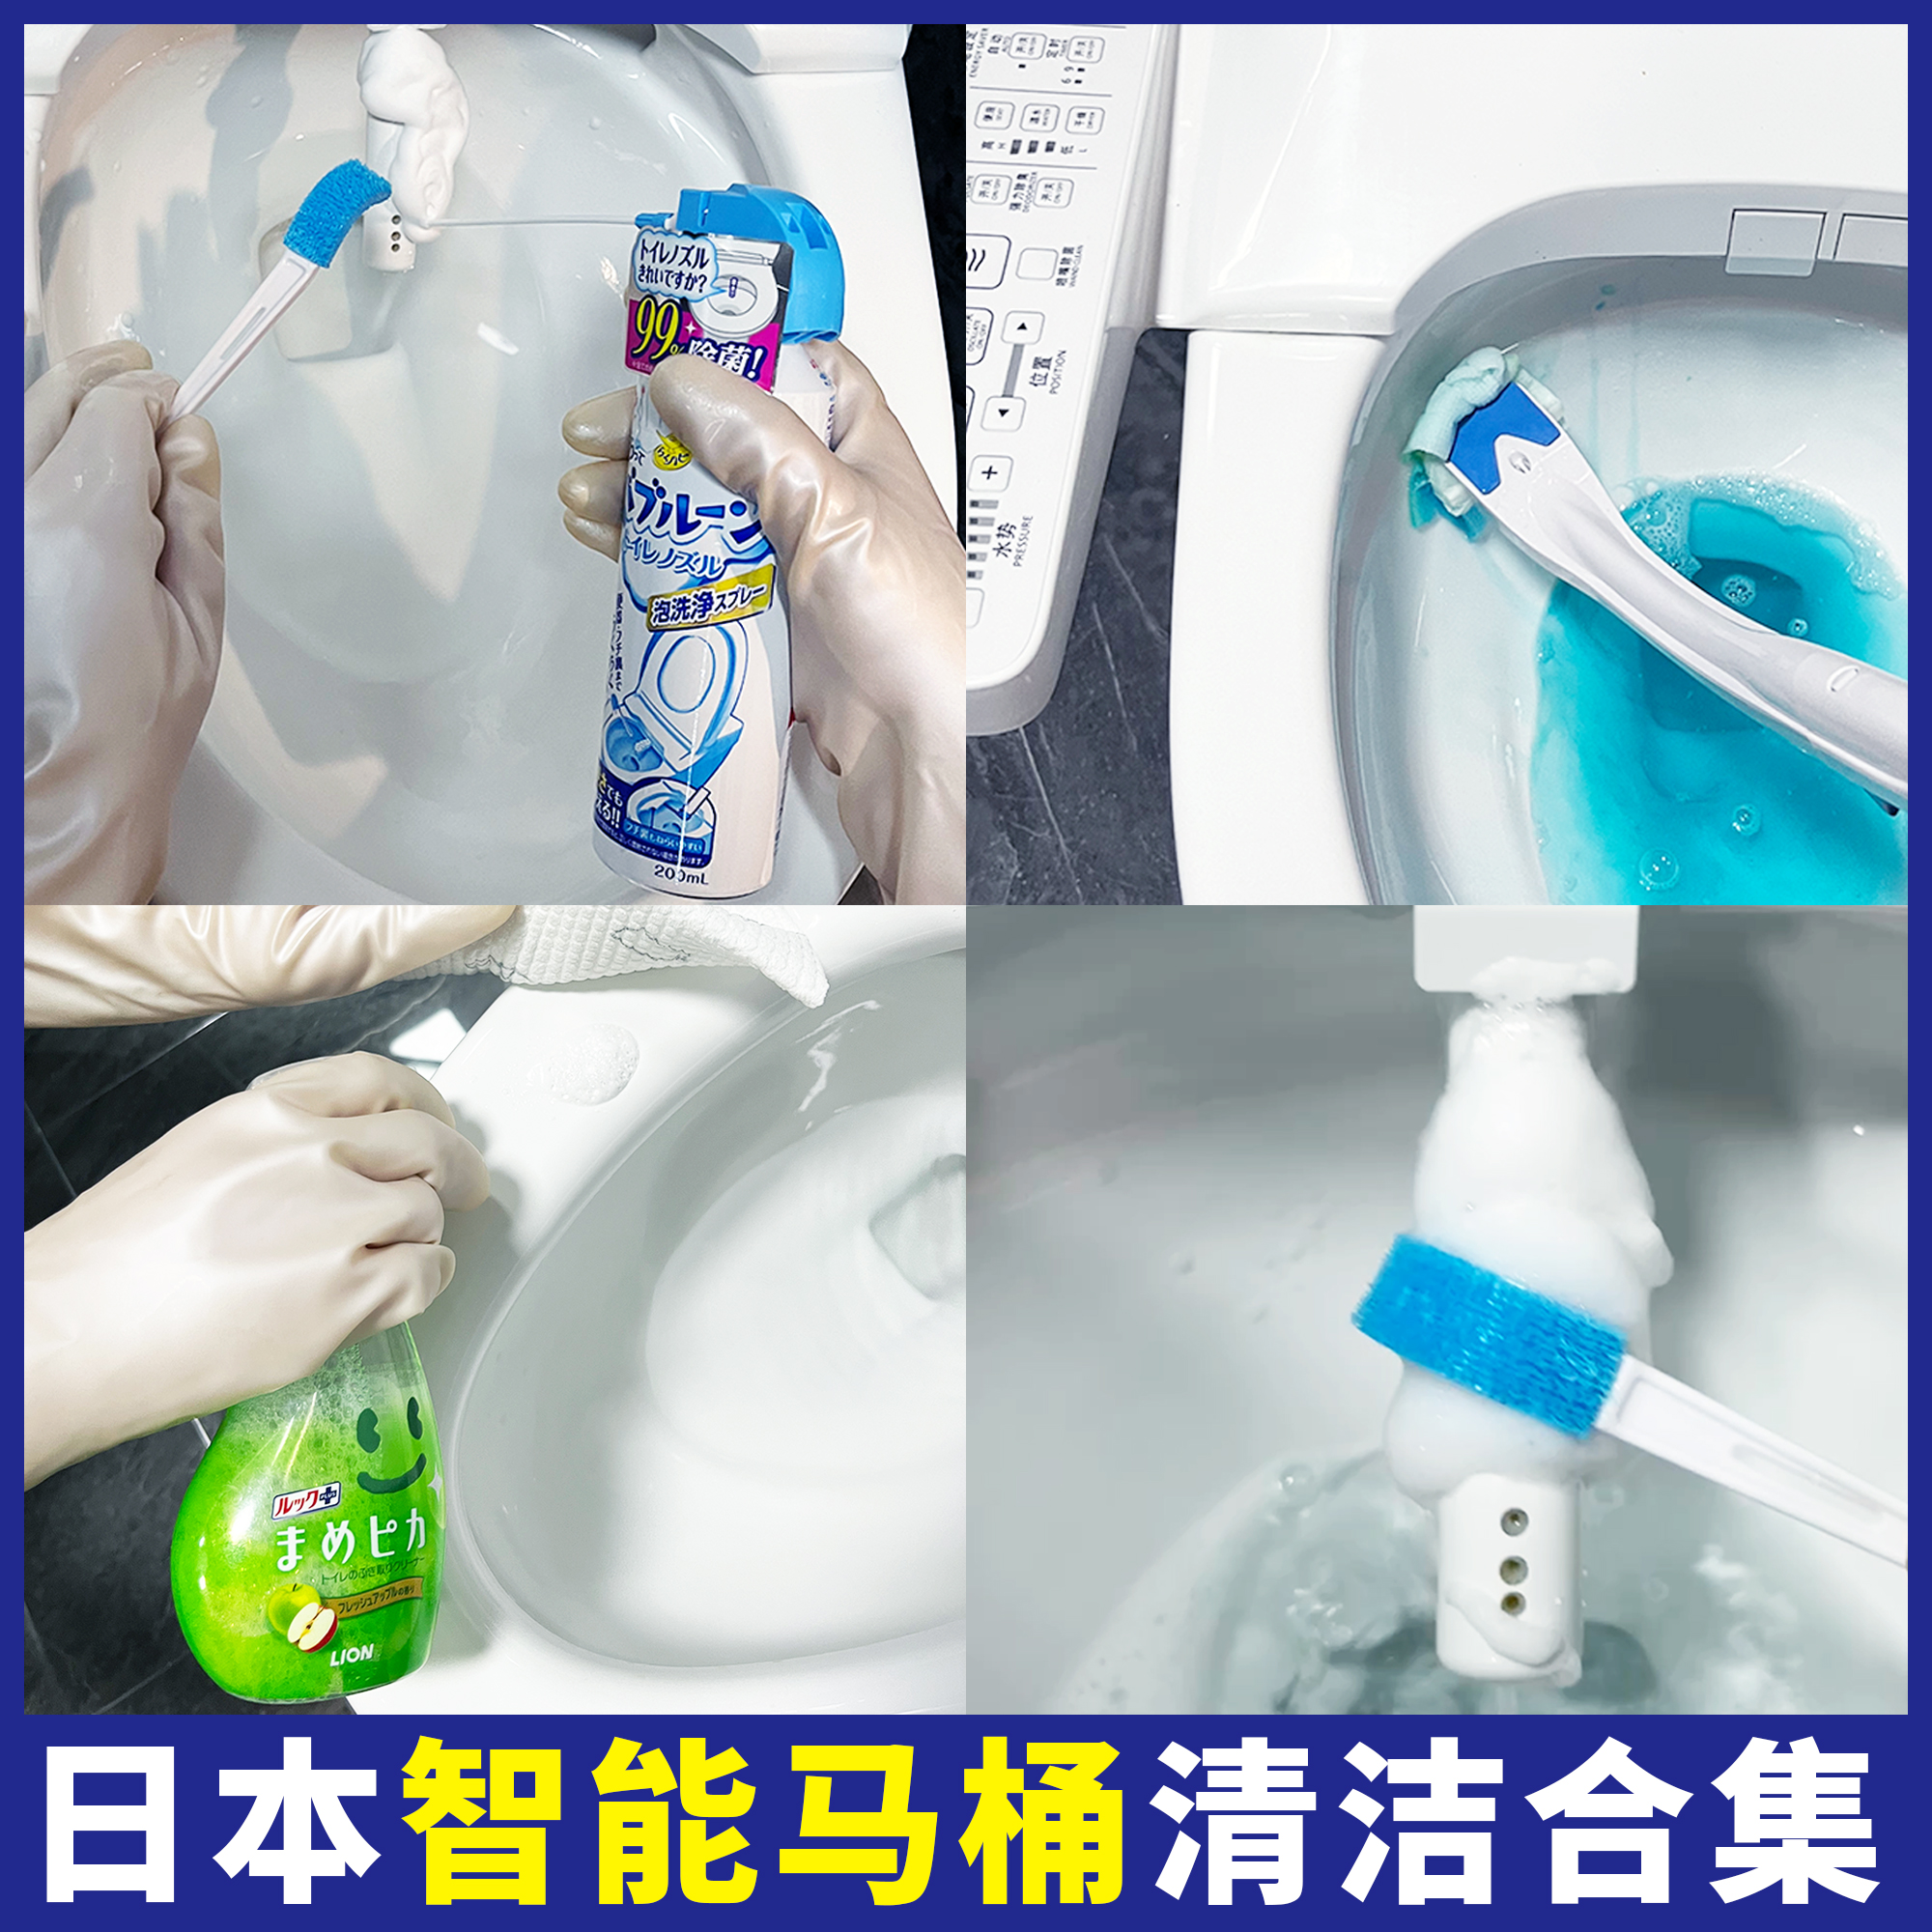 日本智能马桶喷嘴清洁神器工具刷喷头缝隙泡泡清洗无死角除菌消臭